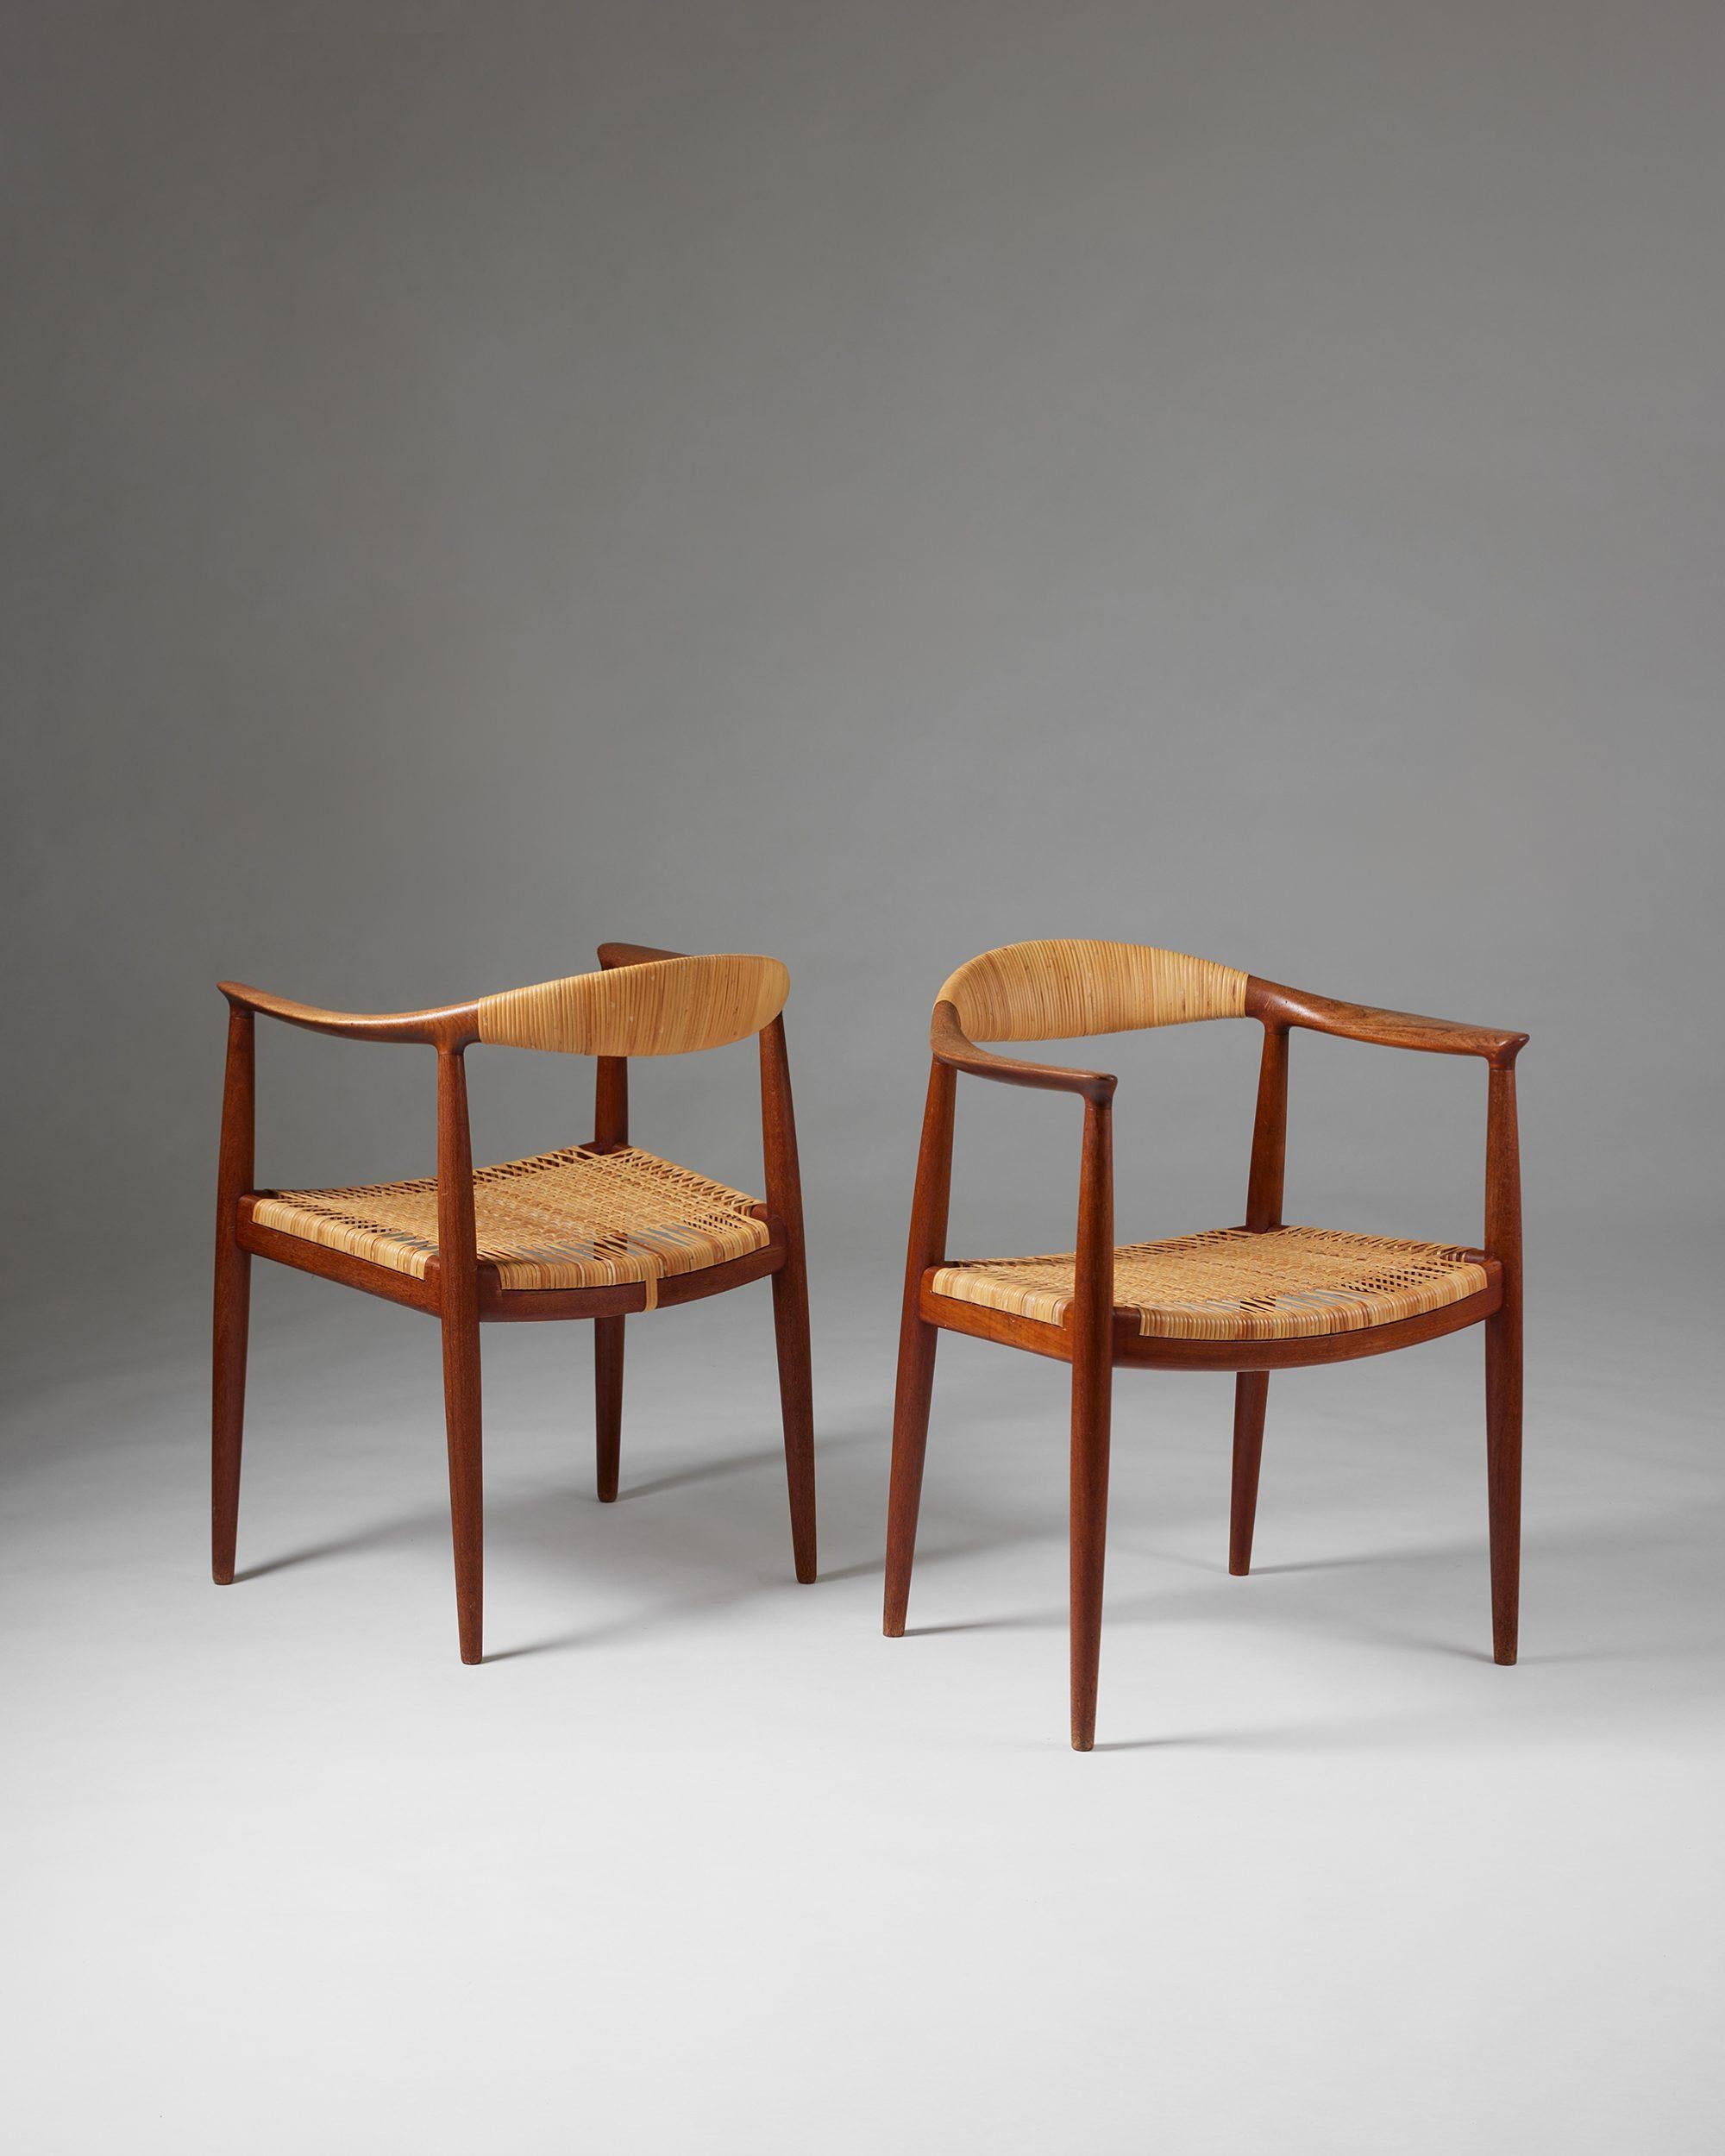 Paar Sessel 'The Chair' Modell JH 501 entworfen von Hans J. Wegner für Johannes Hansen,
Dänemark, 1949.

Teakholz und Schilfrohr.

Frühes Modell mit gekrümmter Rückenlehne.

Gestempelt.

H: 76 cm
B: 63 cm
T: 50 cm
Armhöhe: 68.5 cm
Sitzhöhe: 44